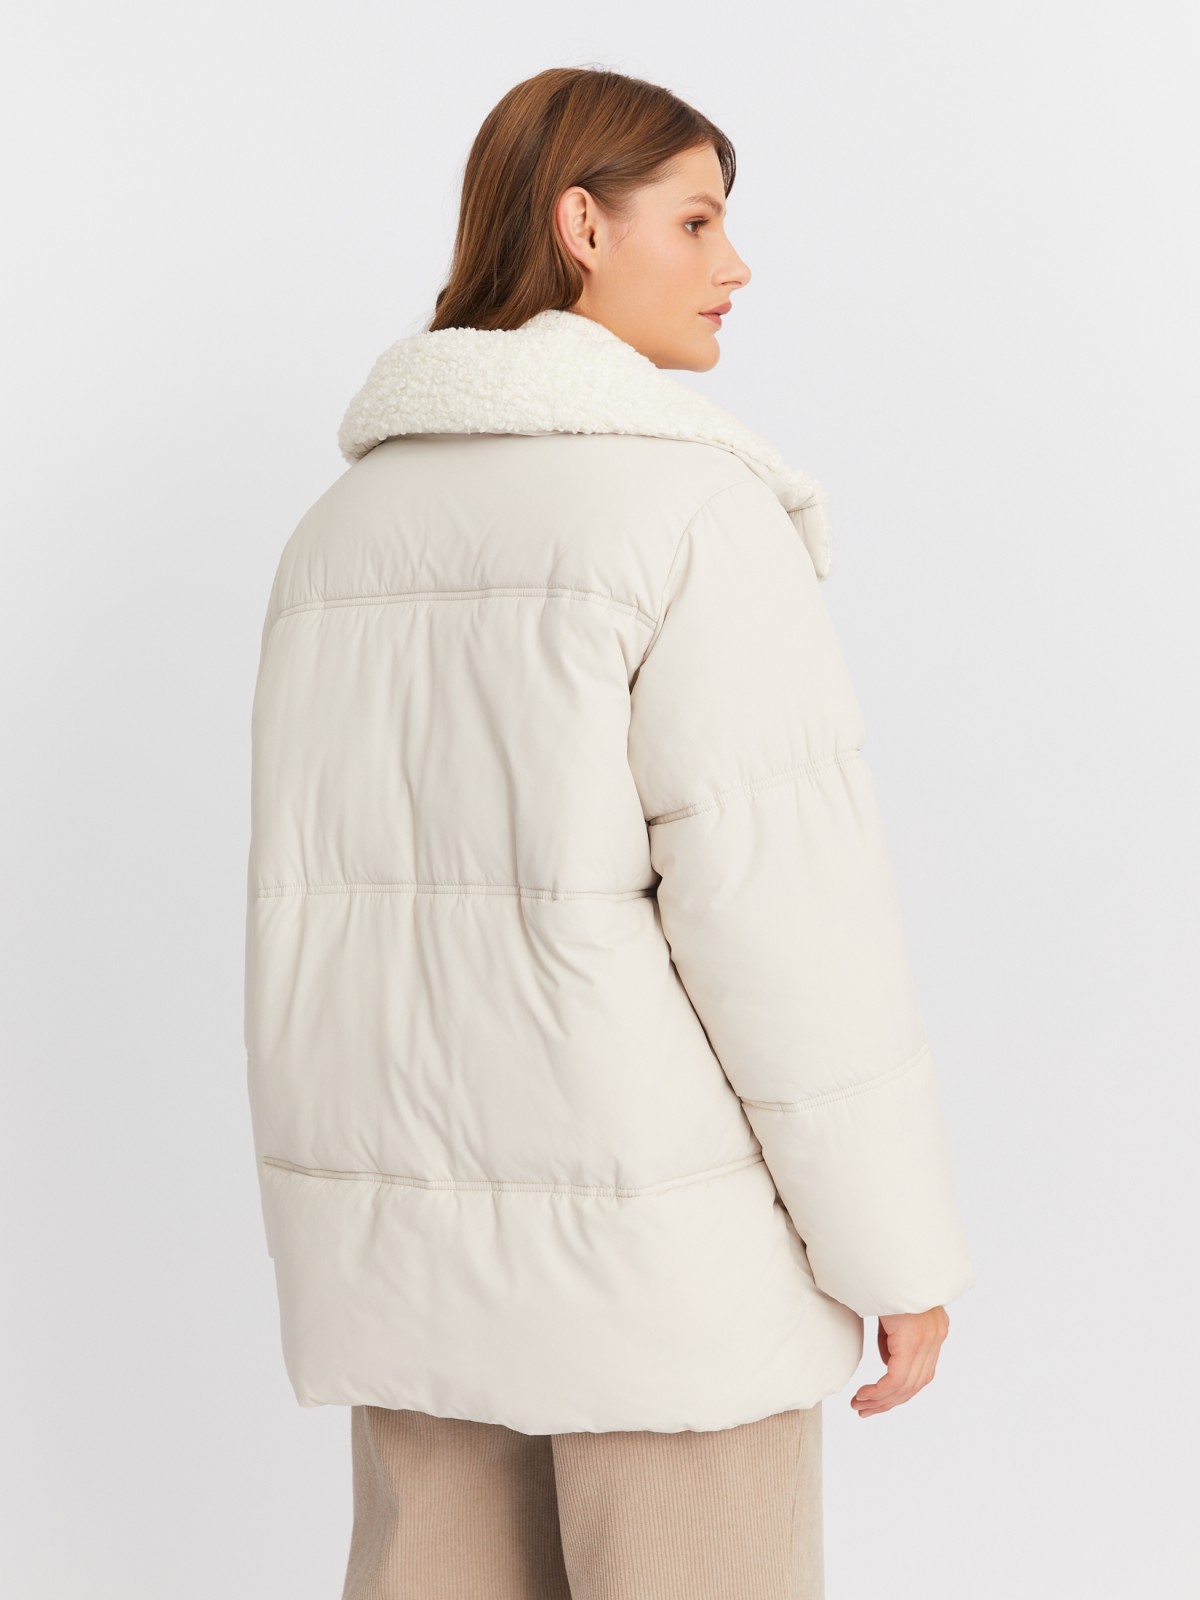 Тёплая стёганая куртка с воротником-стойкой и отделкой из экомеха zolla 023425102044, цвет молоко, размер XS - фото 6